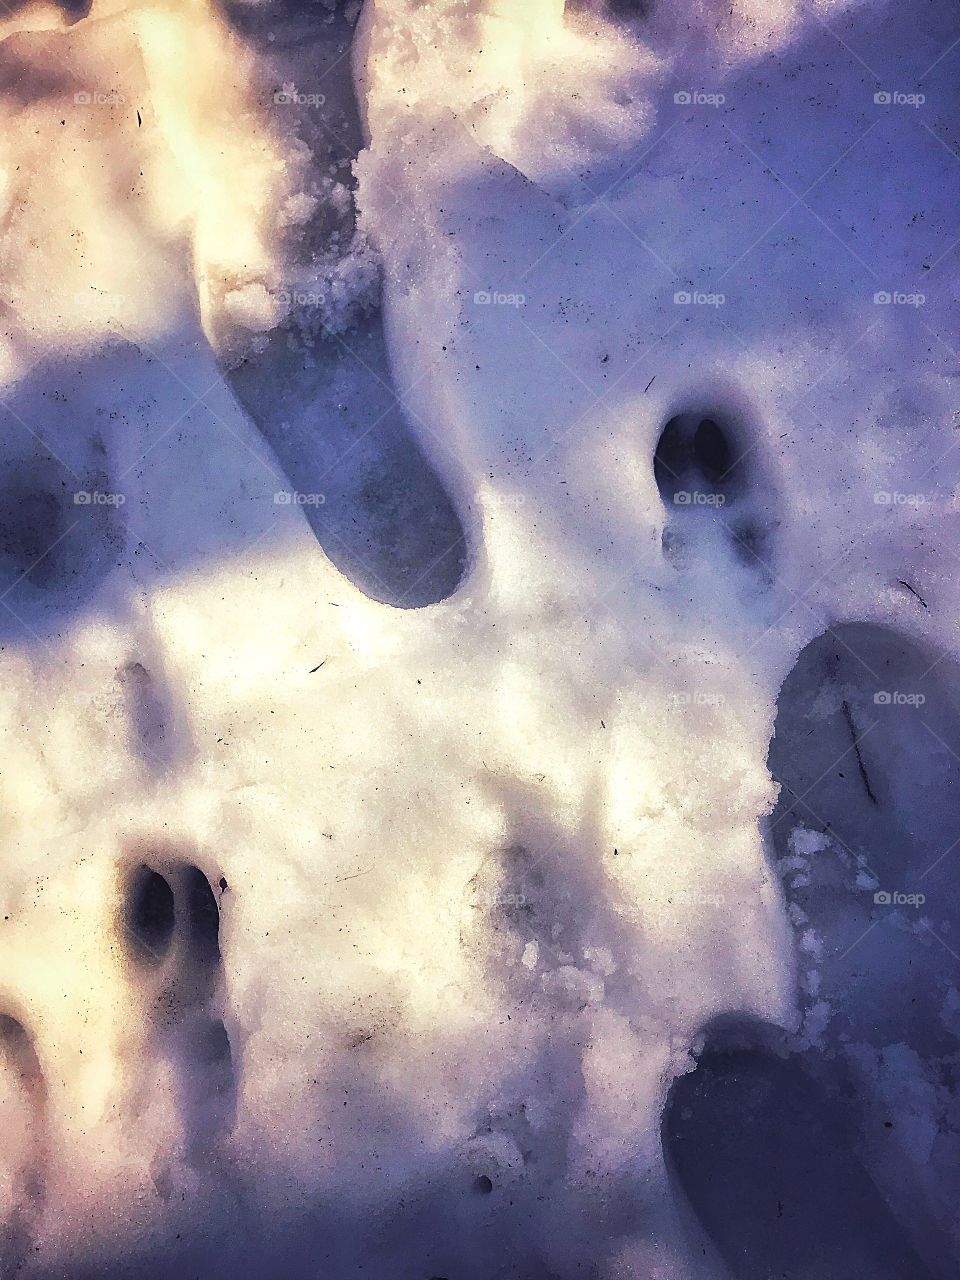 Human and deer tracks...